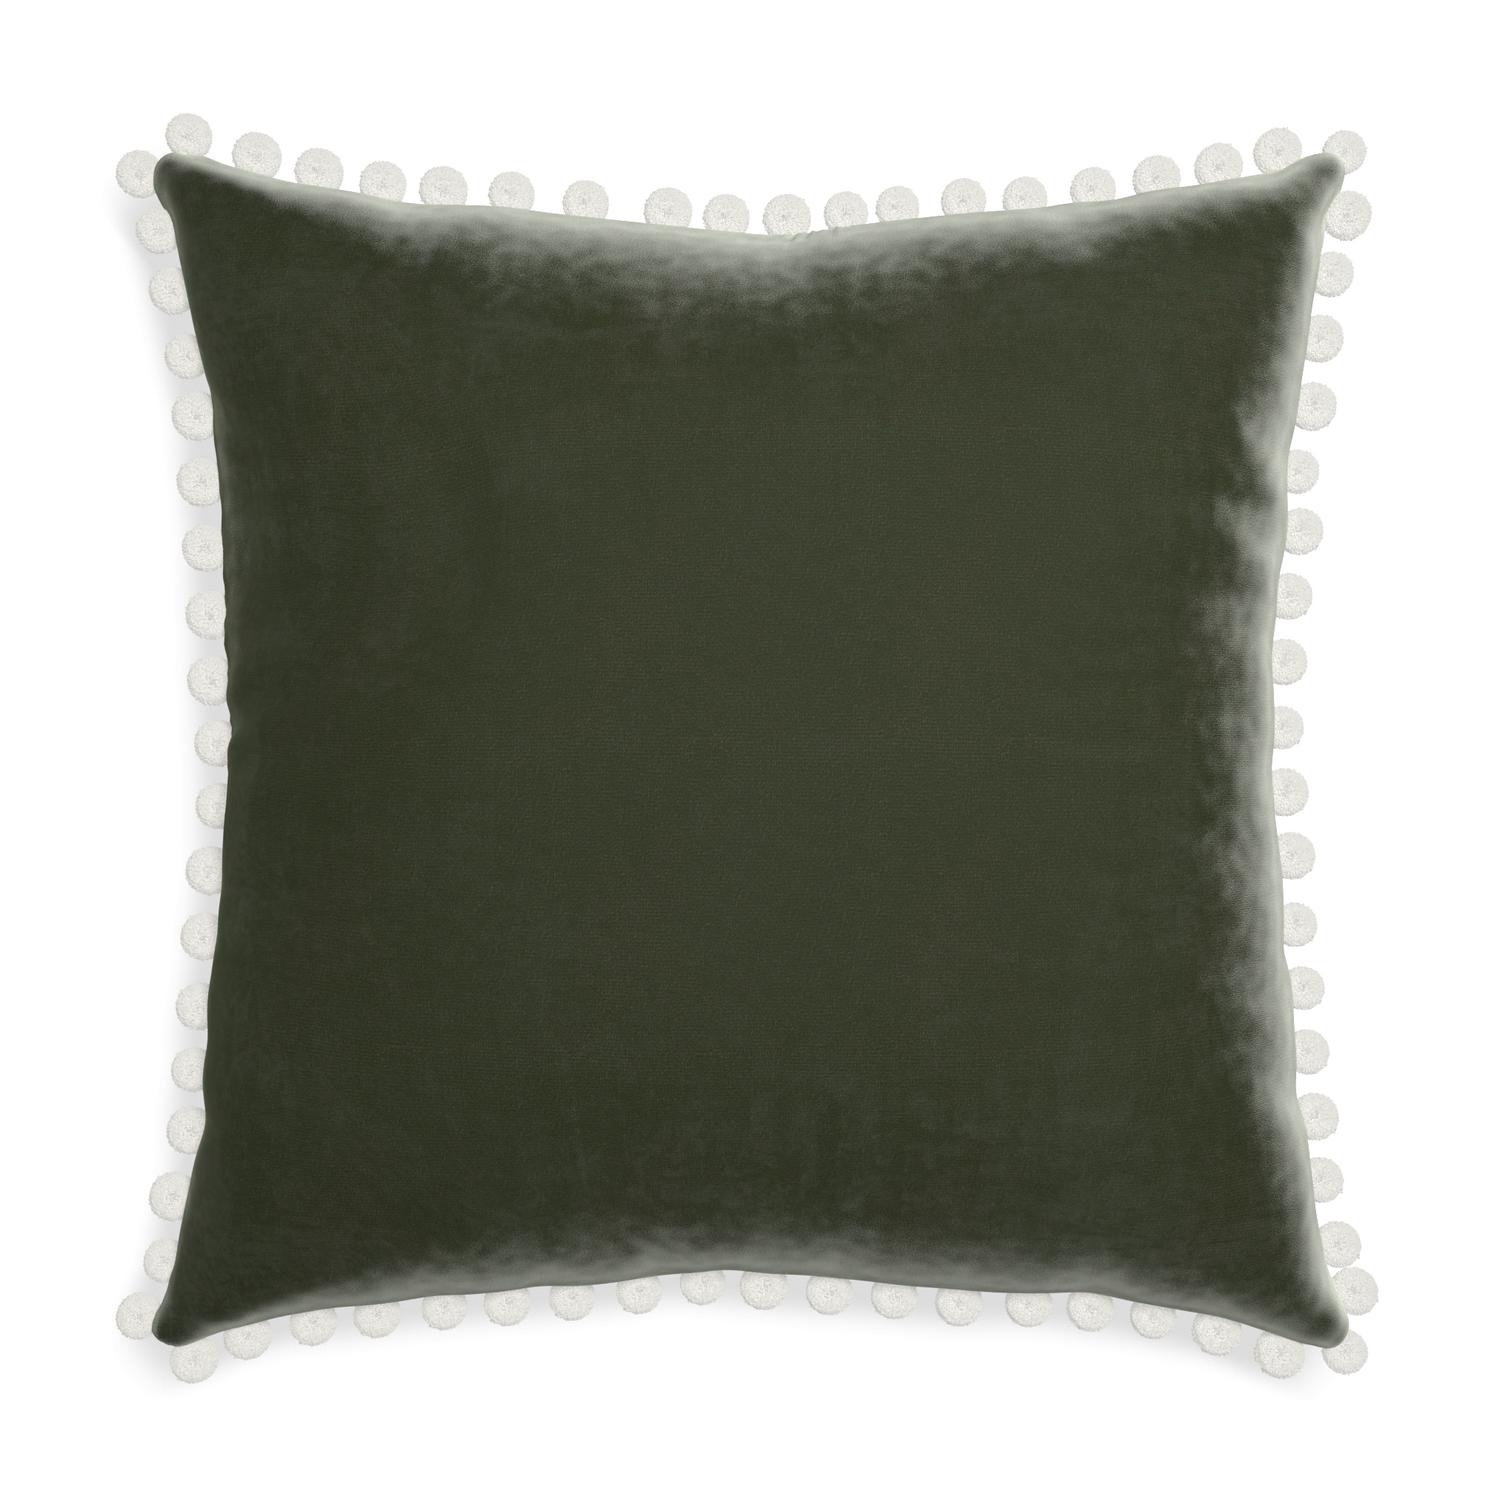 square fern green velvet pillow with white pom poms